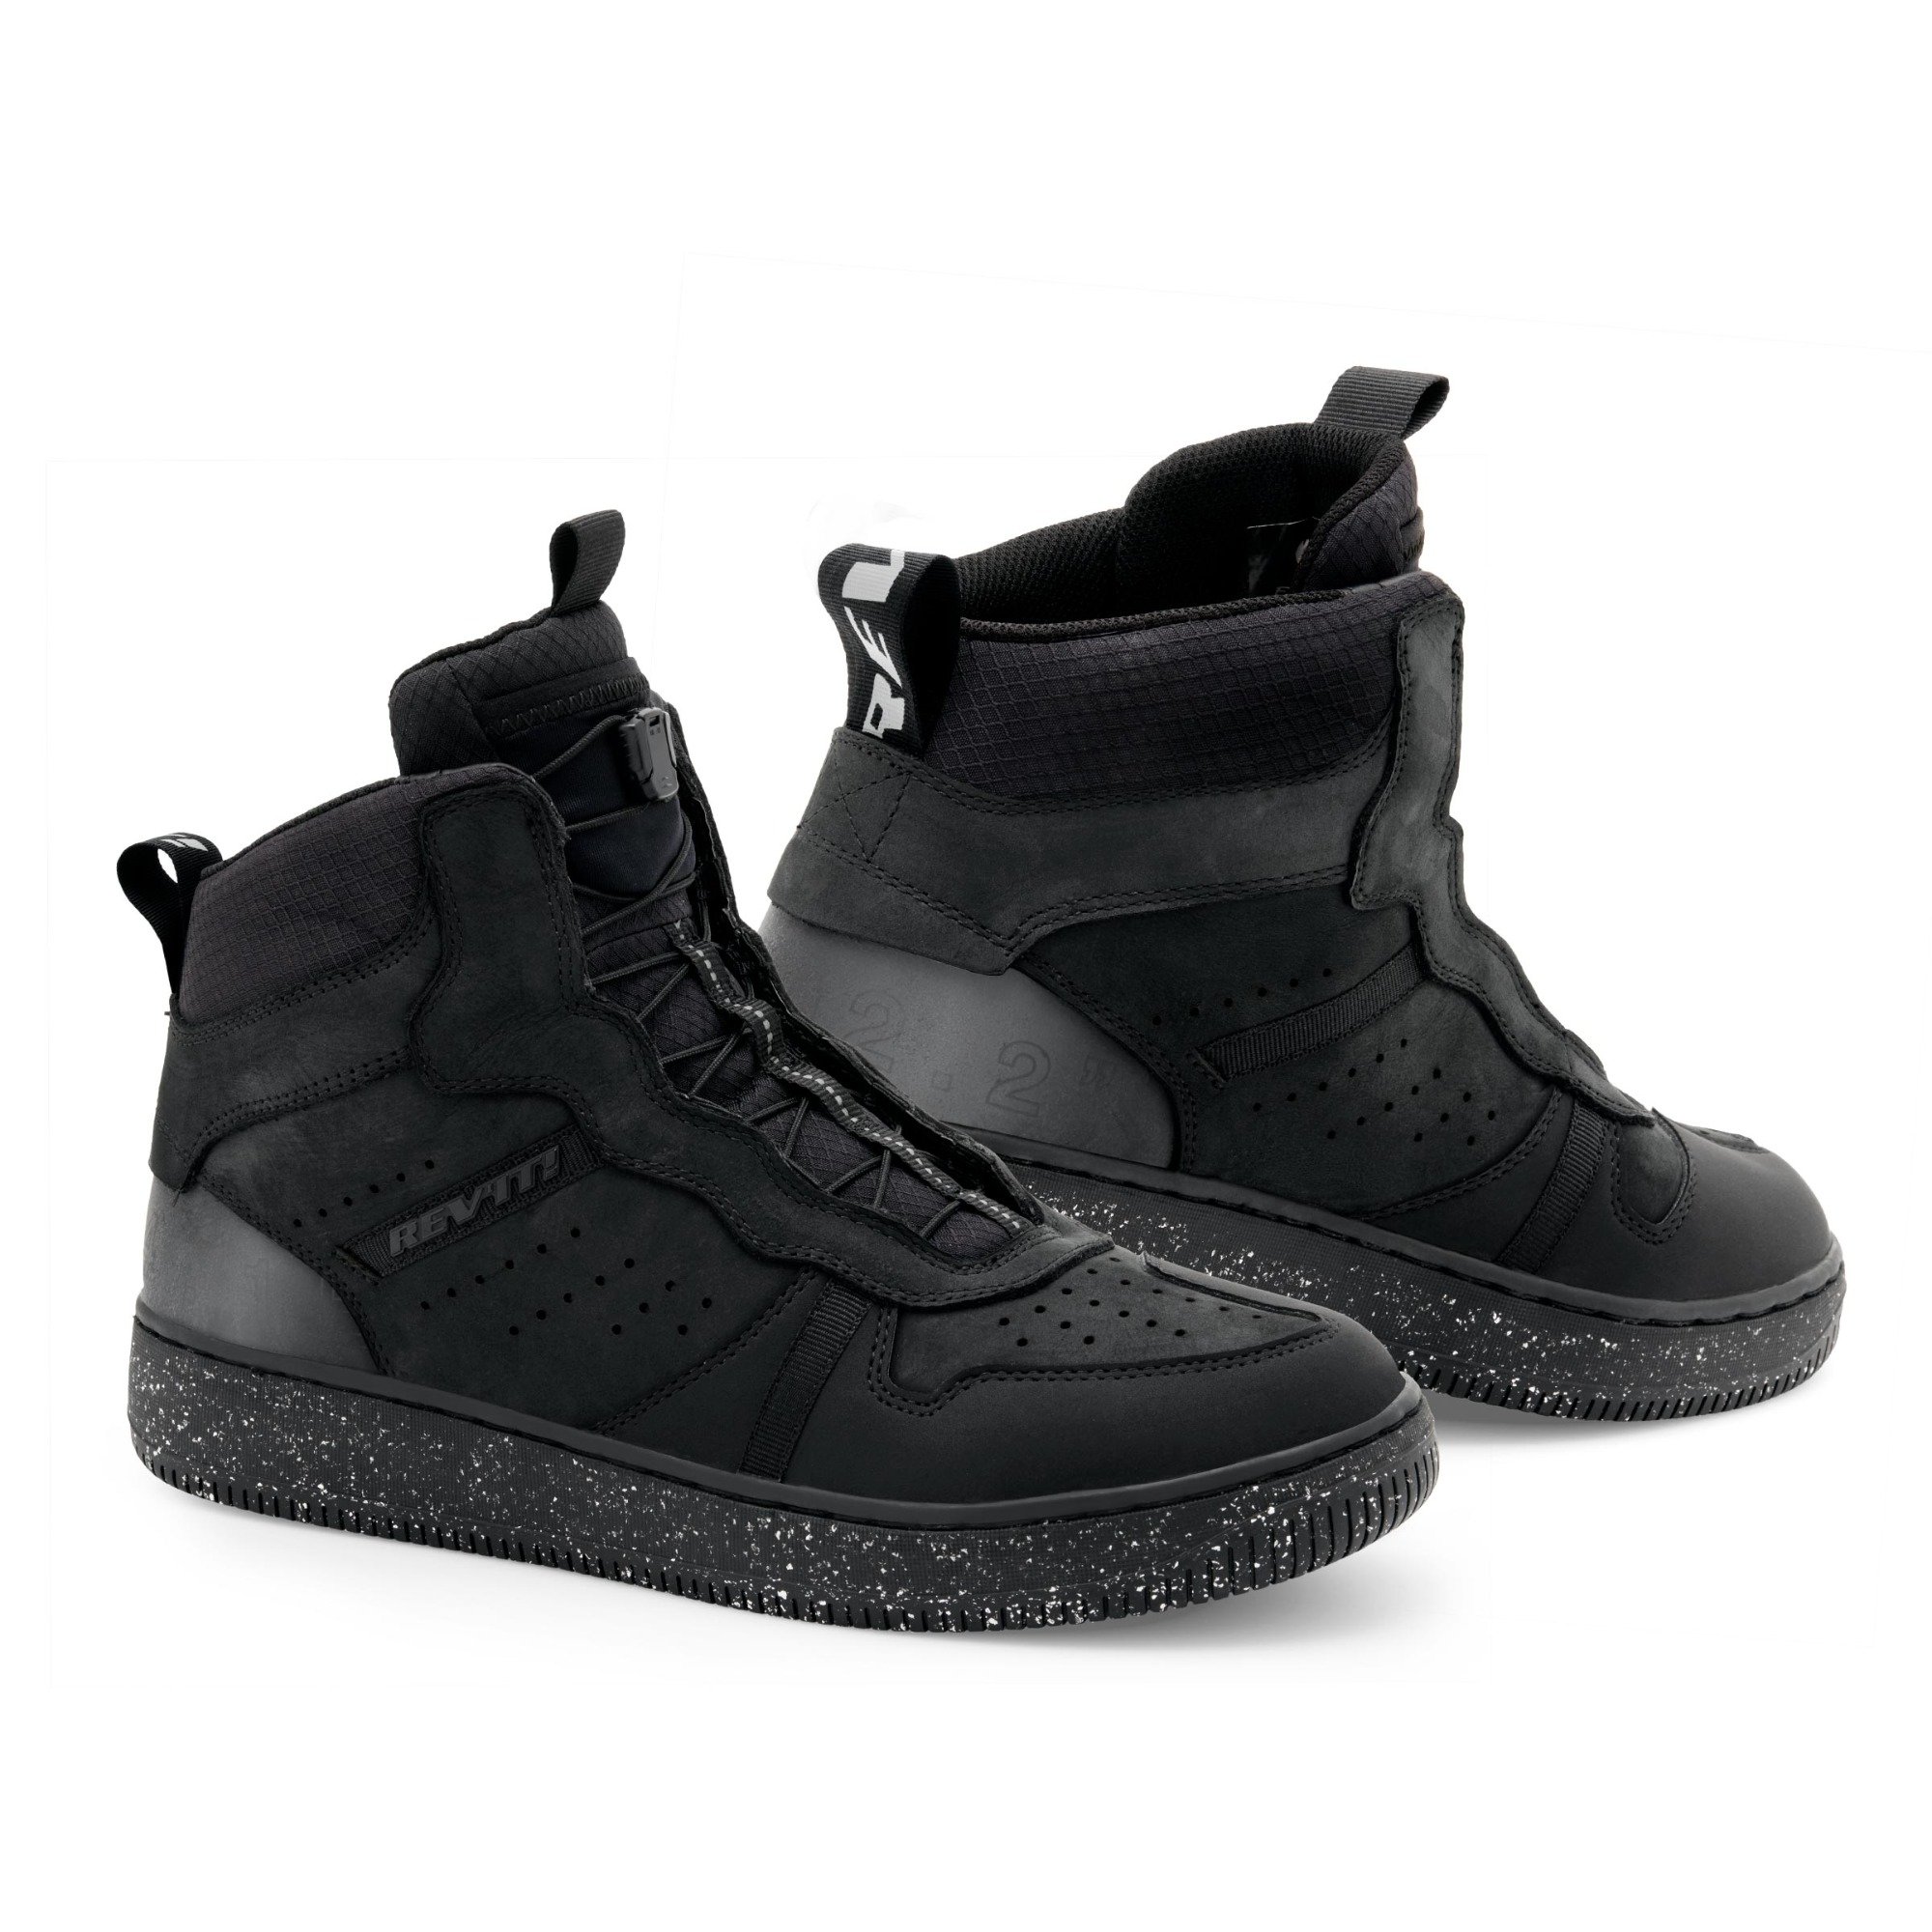 Image of REV'IT! Shoes Cayman Black Size 39 EN